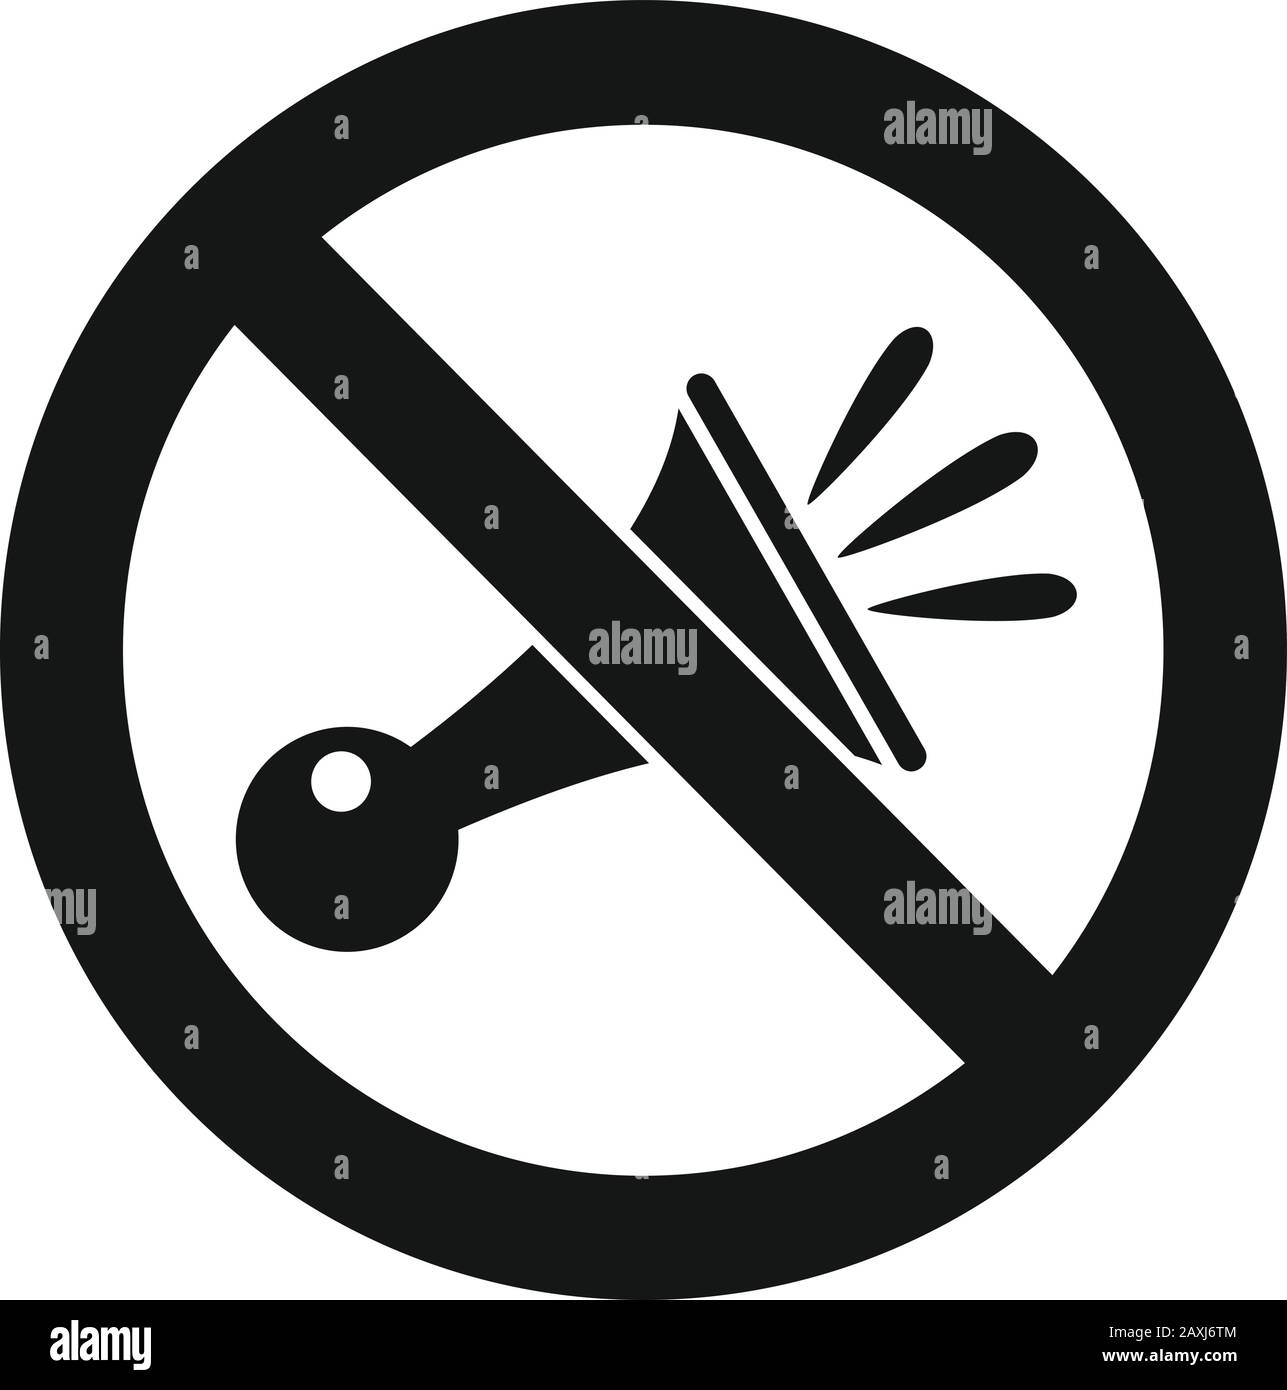 Kein hupen-verkehrsschild isoliert auf weißem hintergrund durchgestrichenes  signalhorn-symbol verbot von harten geräuschen hupen verbieten kein lautes  geräuschsymbol vektor-illustration